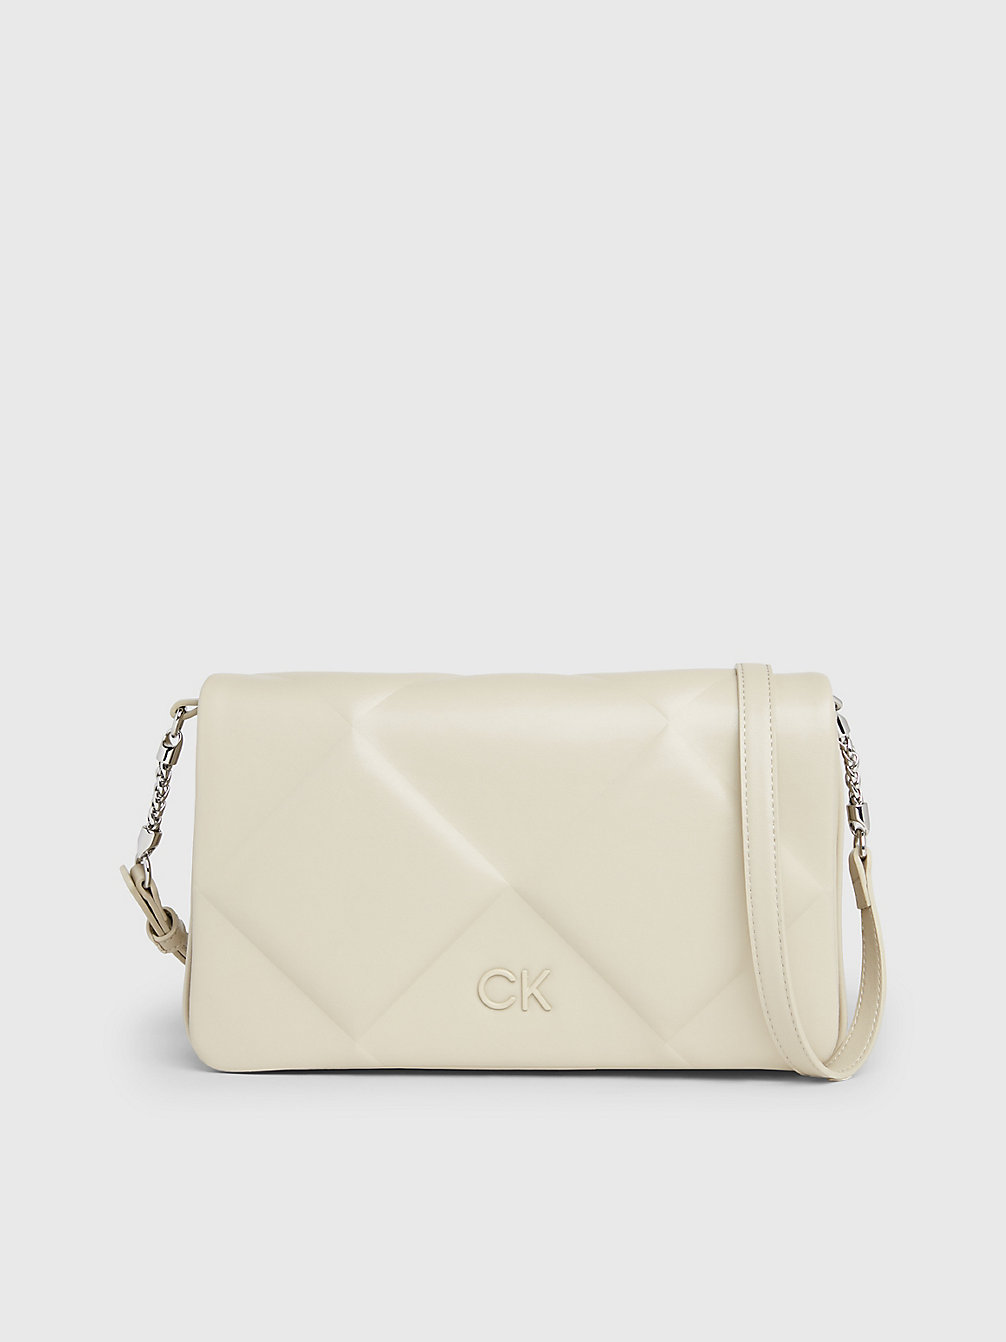 STONEY BEIGE > Quilted Shoulder Bag > undefined Women - Calvin Klein